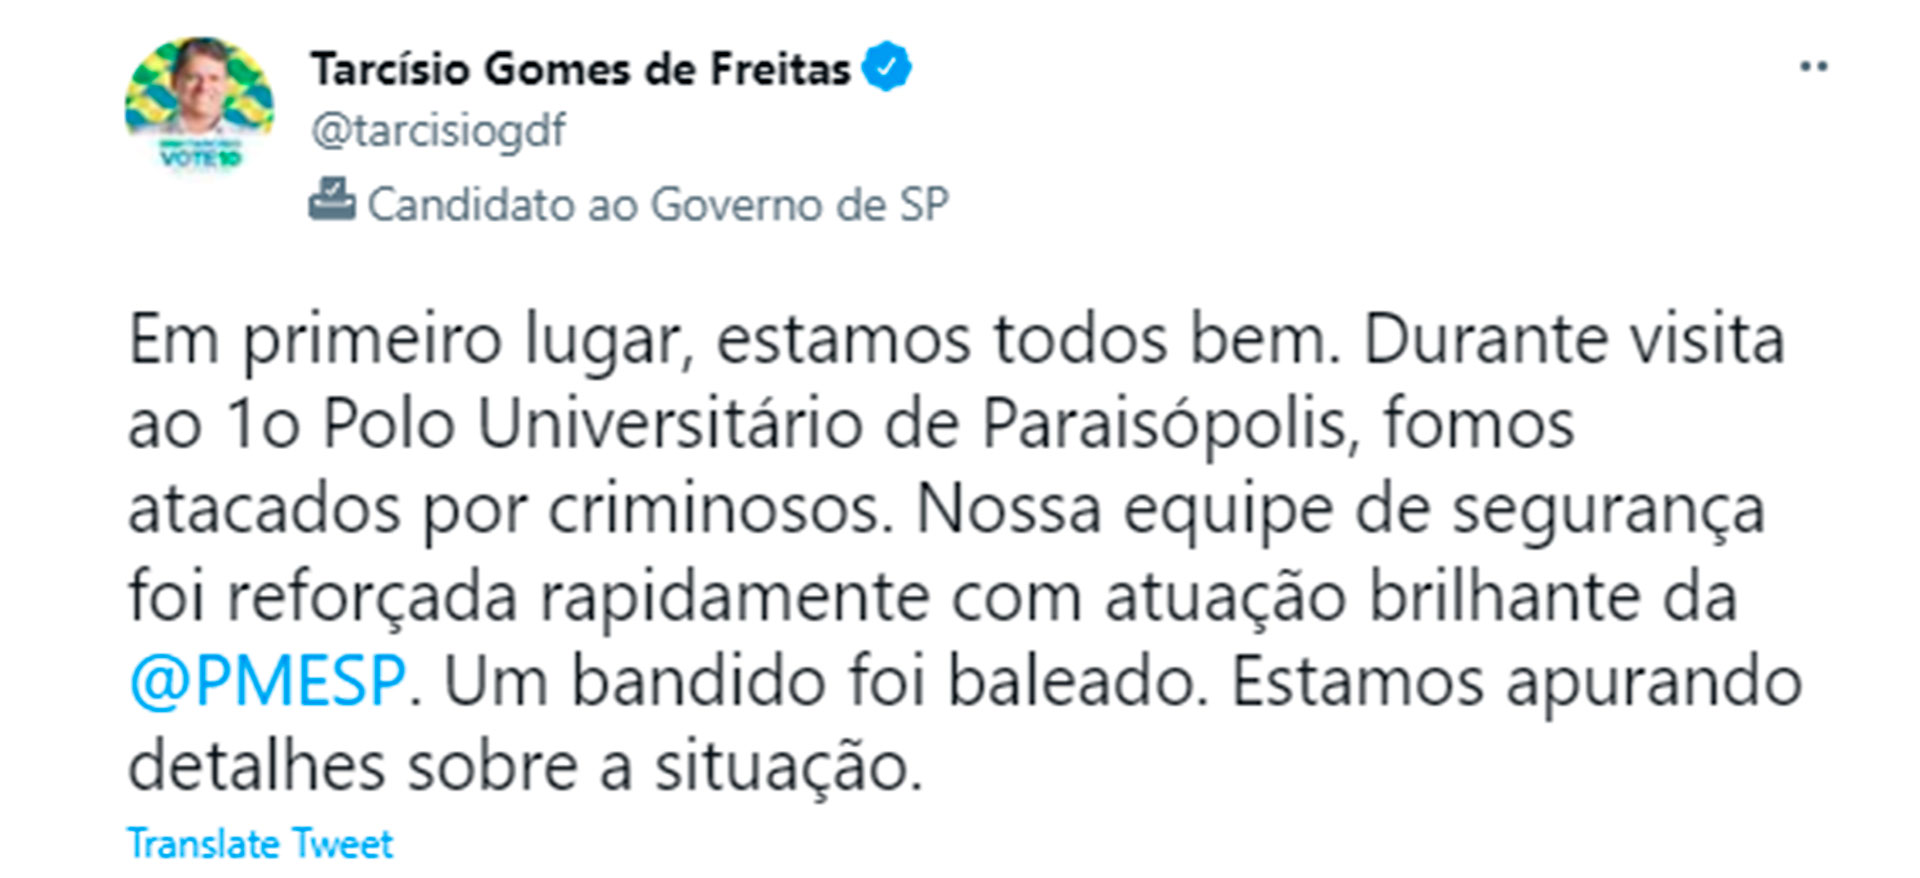 El mensaje de Gomes de Freitas en Twitter